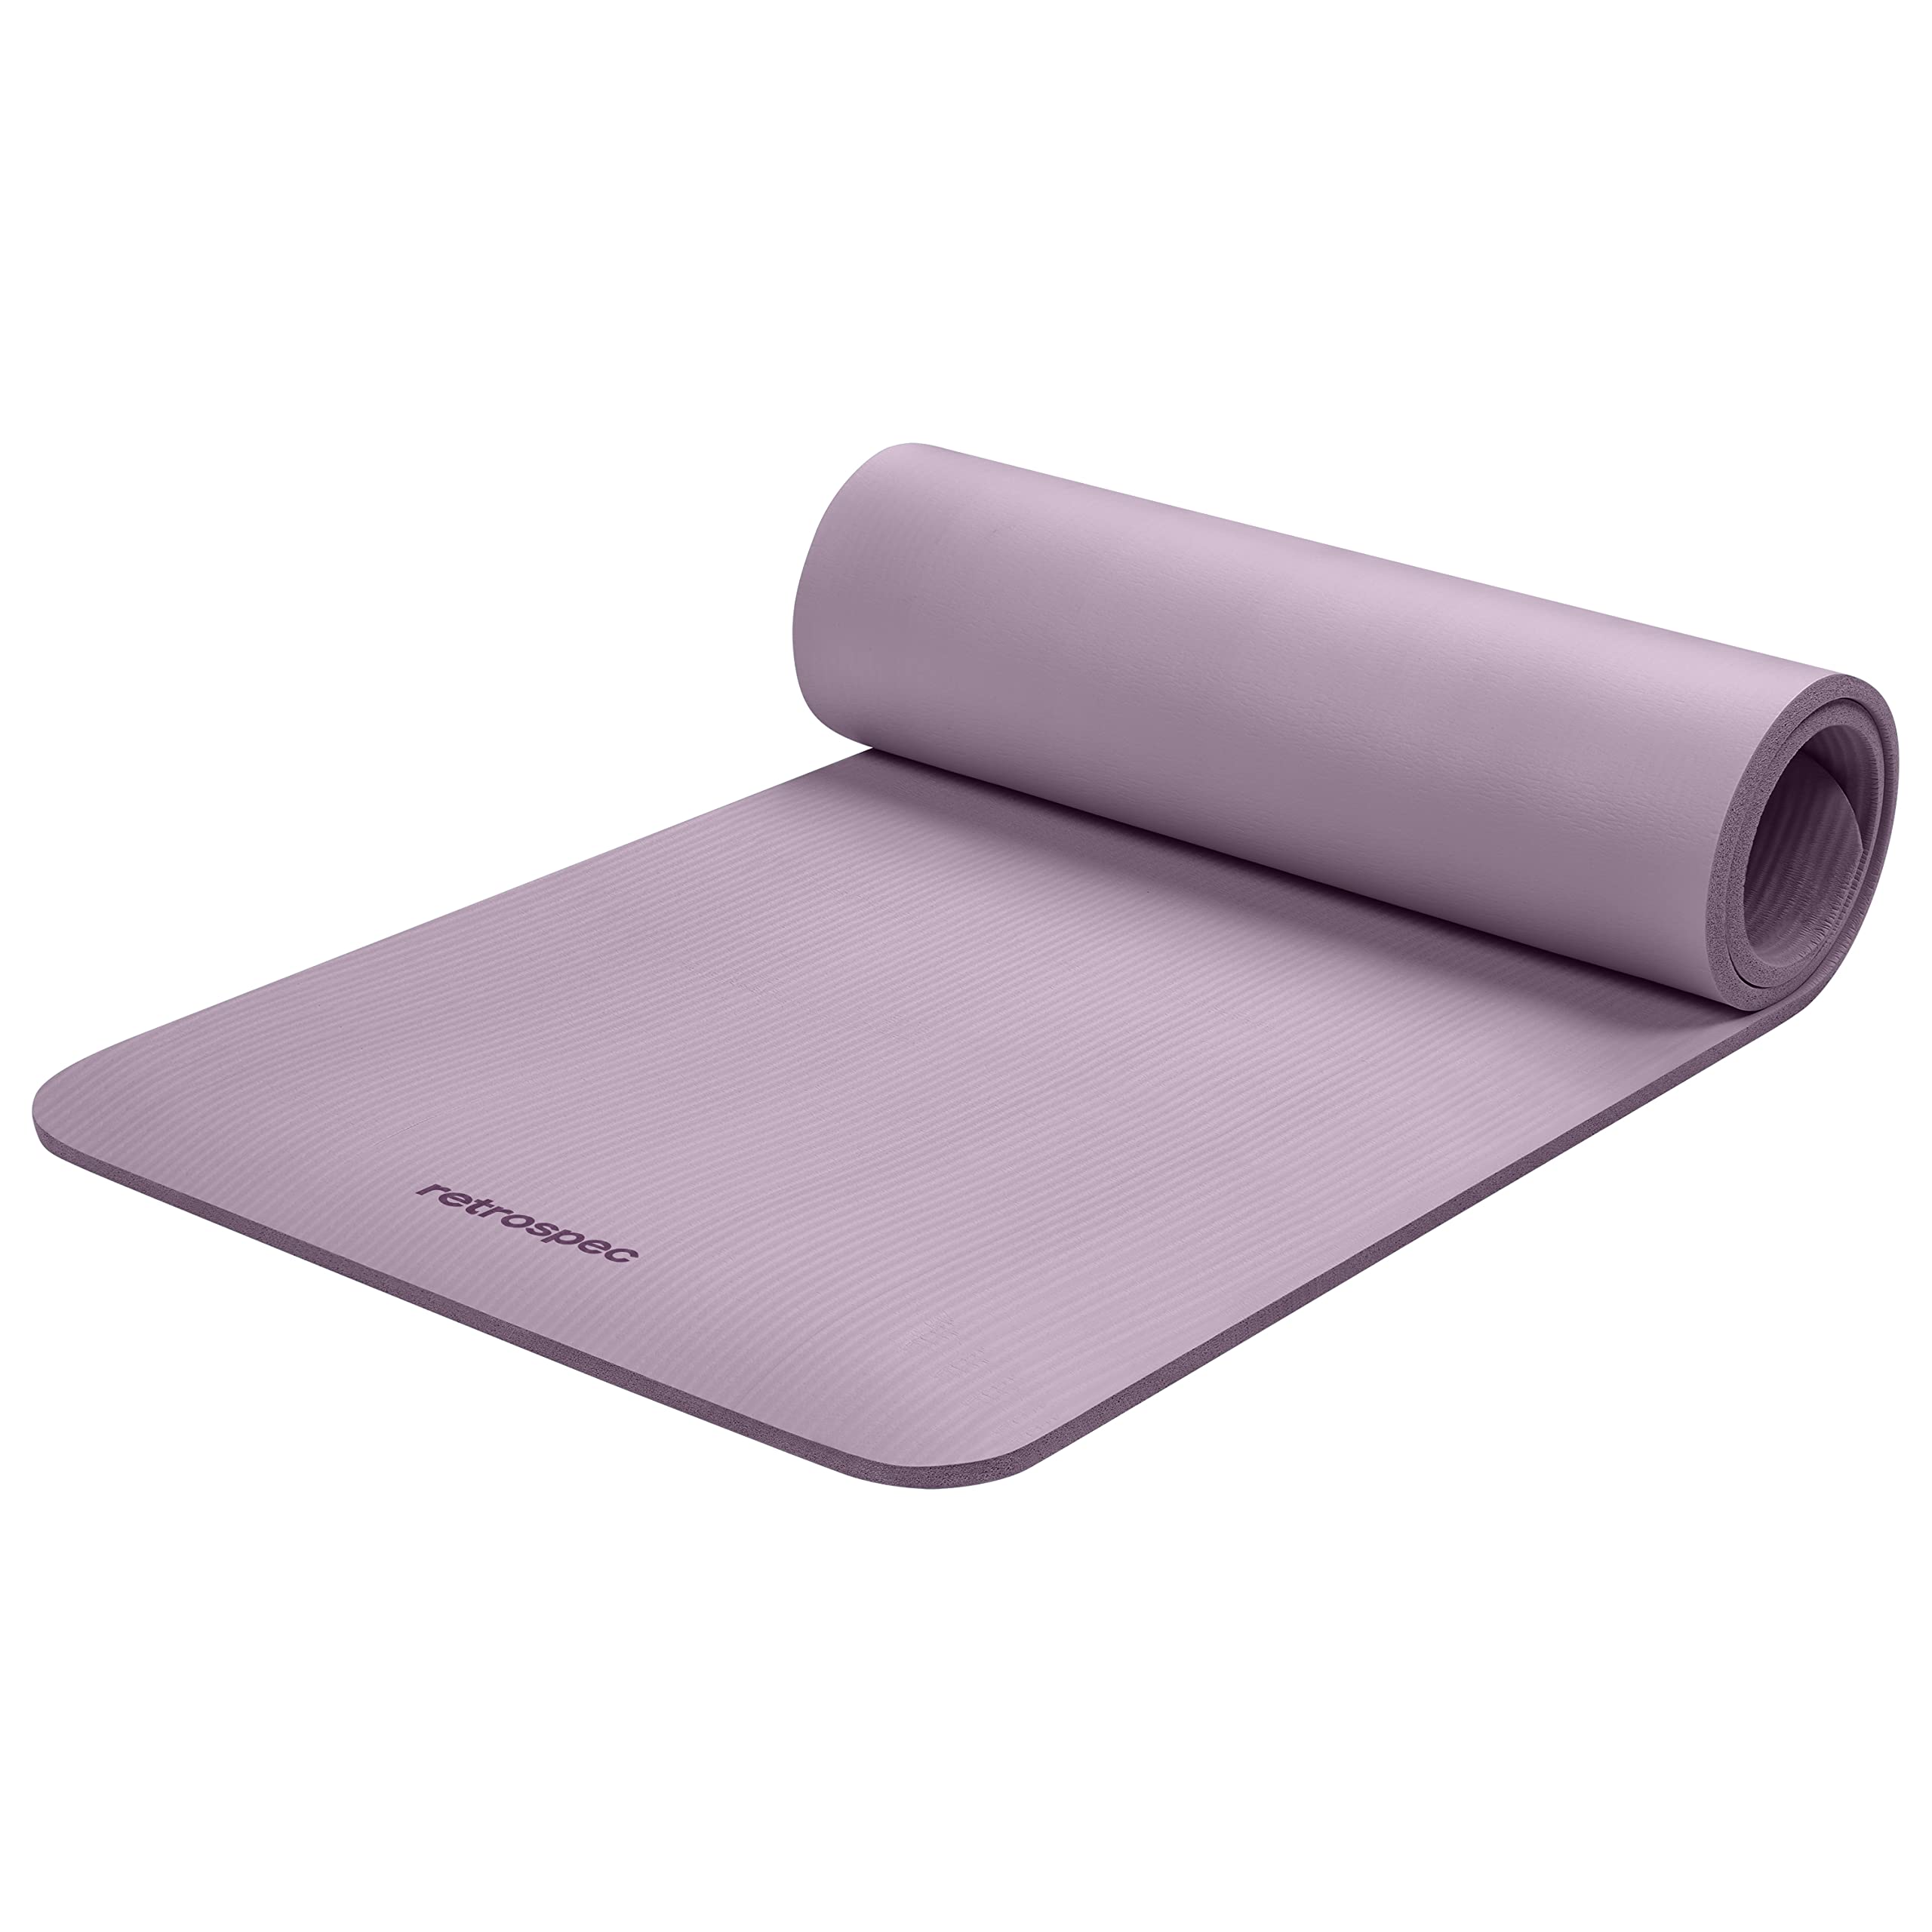 Retrospec Solana Yogamatte, 1,27 cm dick, mit Nylonband, für Damen und Herren, rutschfeste Trainingsmatte für Yoga, Pilates, Stretching, Boden- und Fitness-Workouts, violetter Dunst